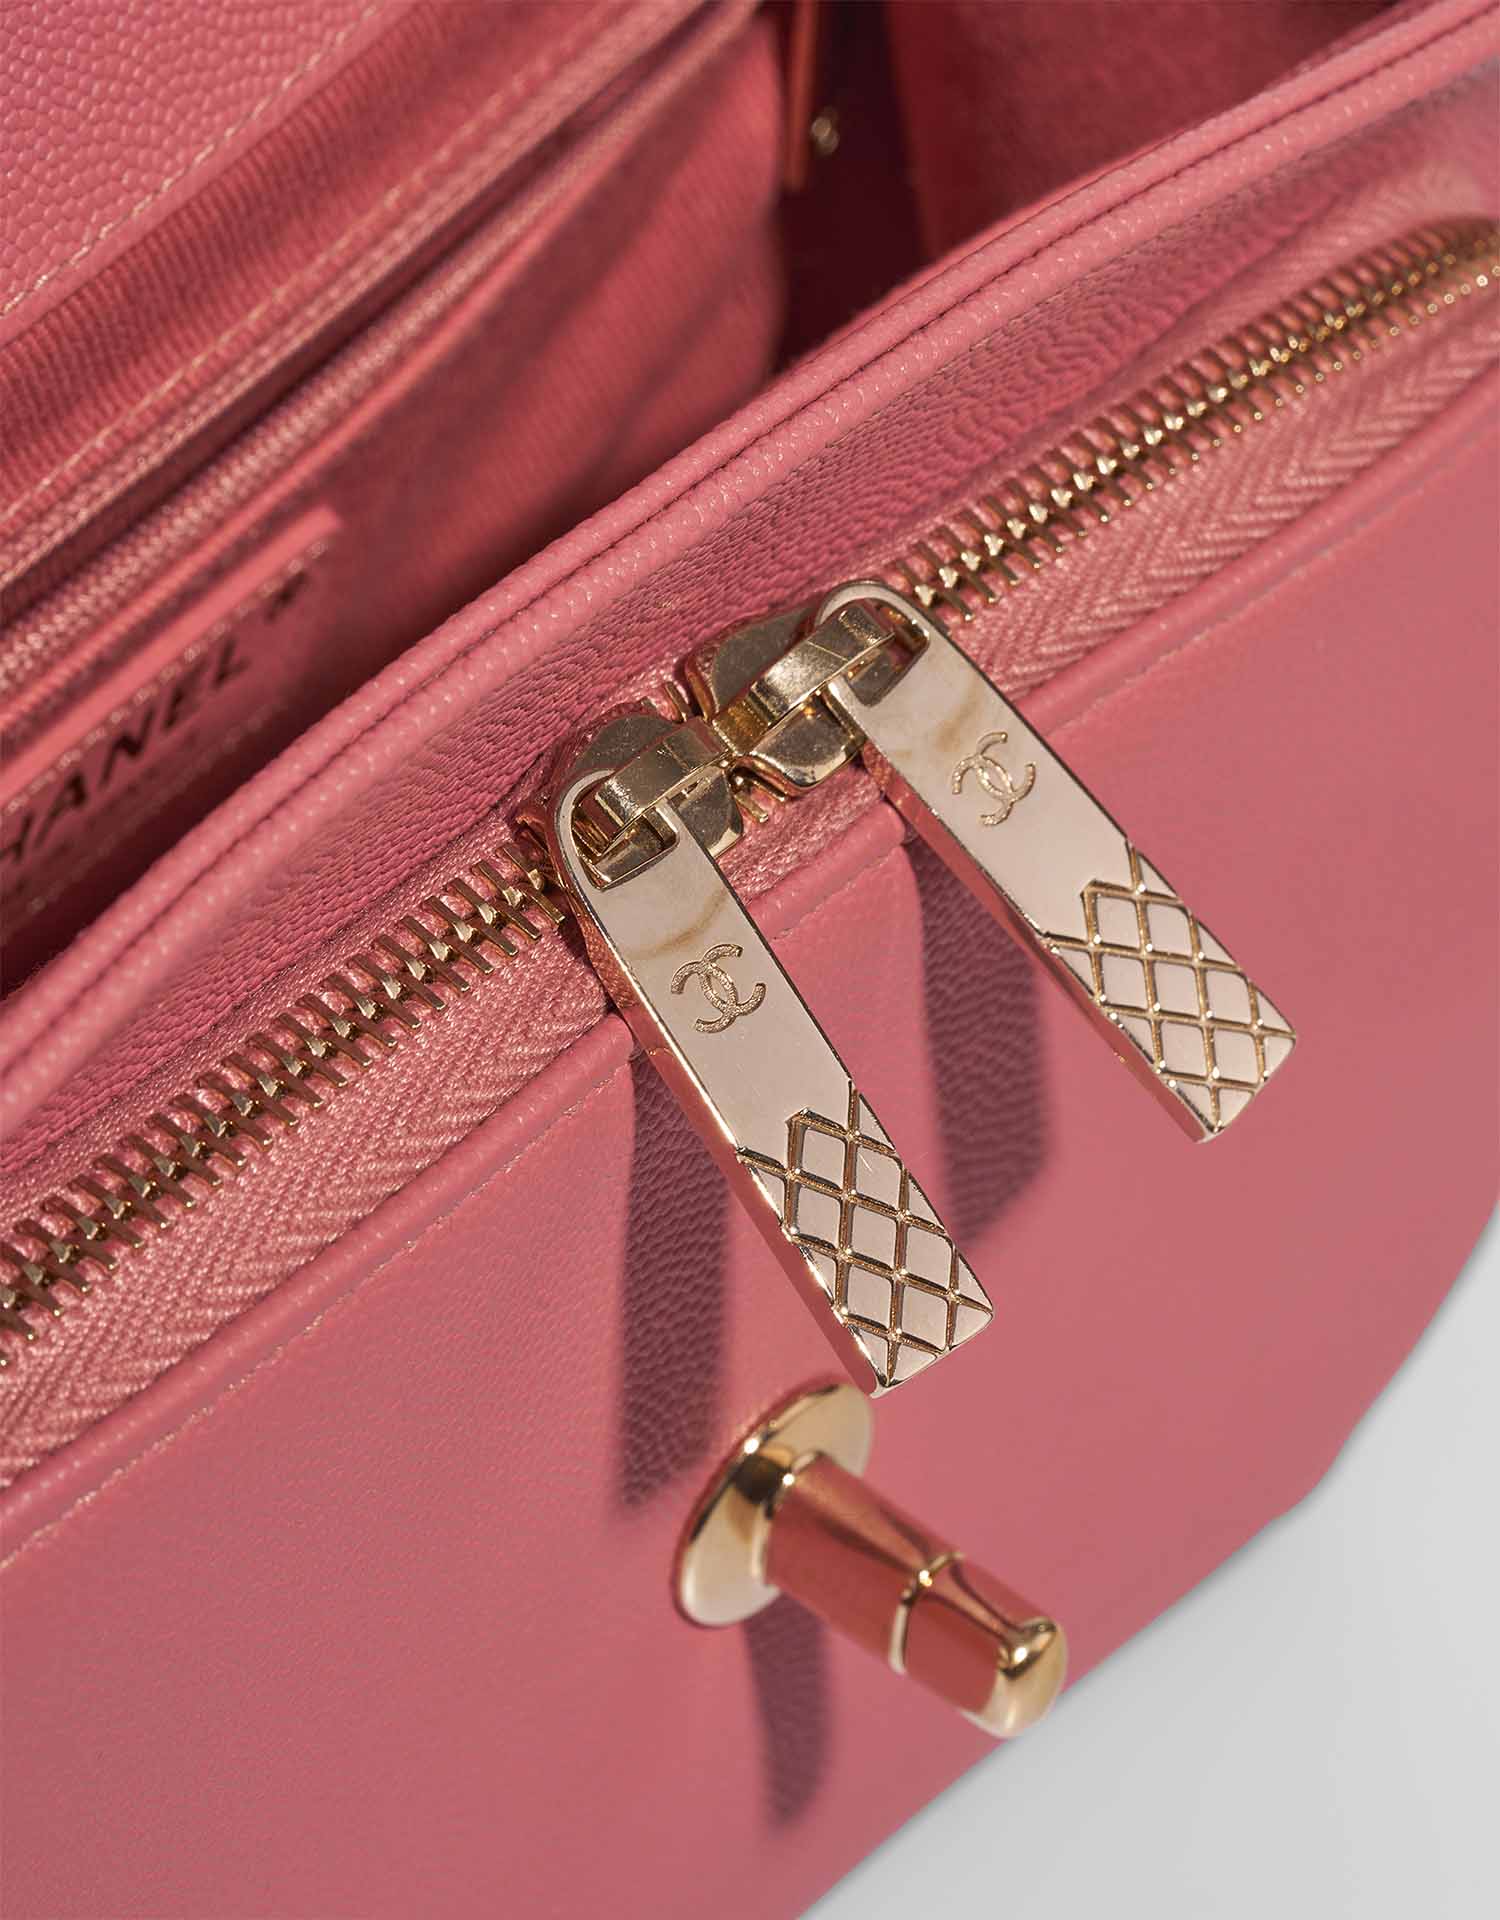 Chanel Business Affinity Medium Coral Pink Verschluss-System | Verkaufen Sie Ihre Designer-Tasche auf Saclab.com